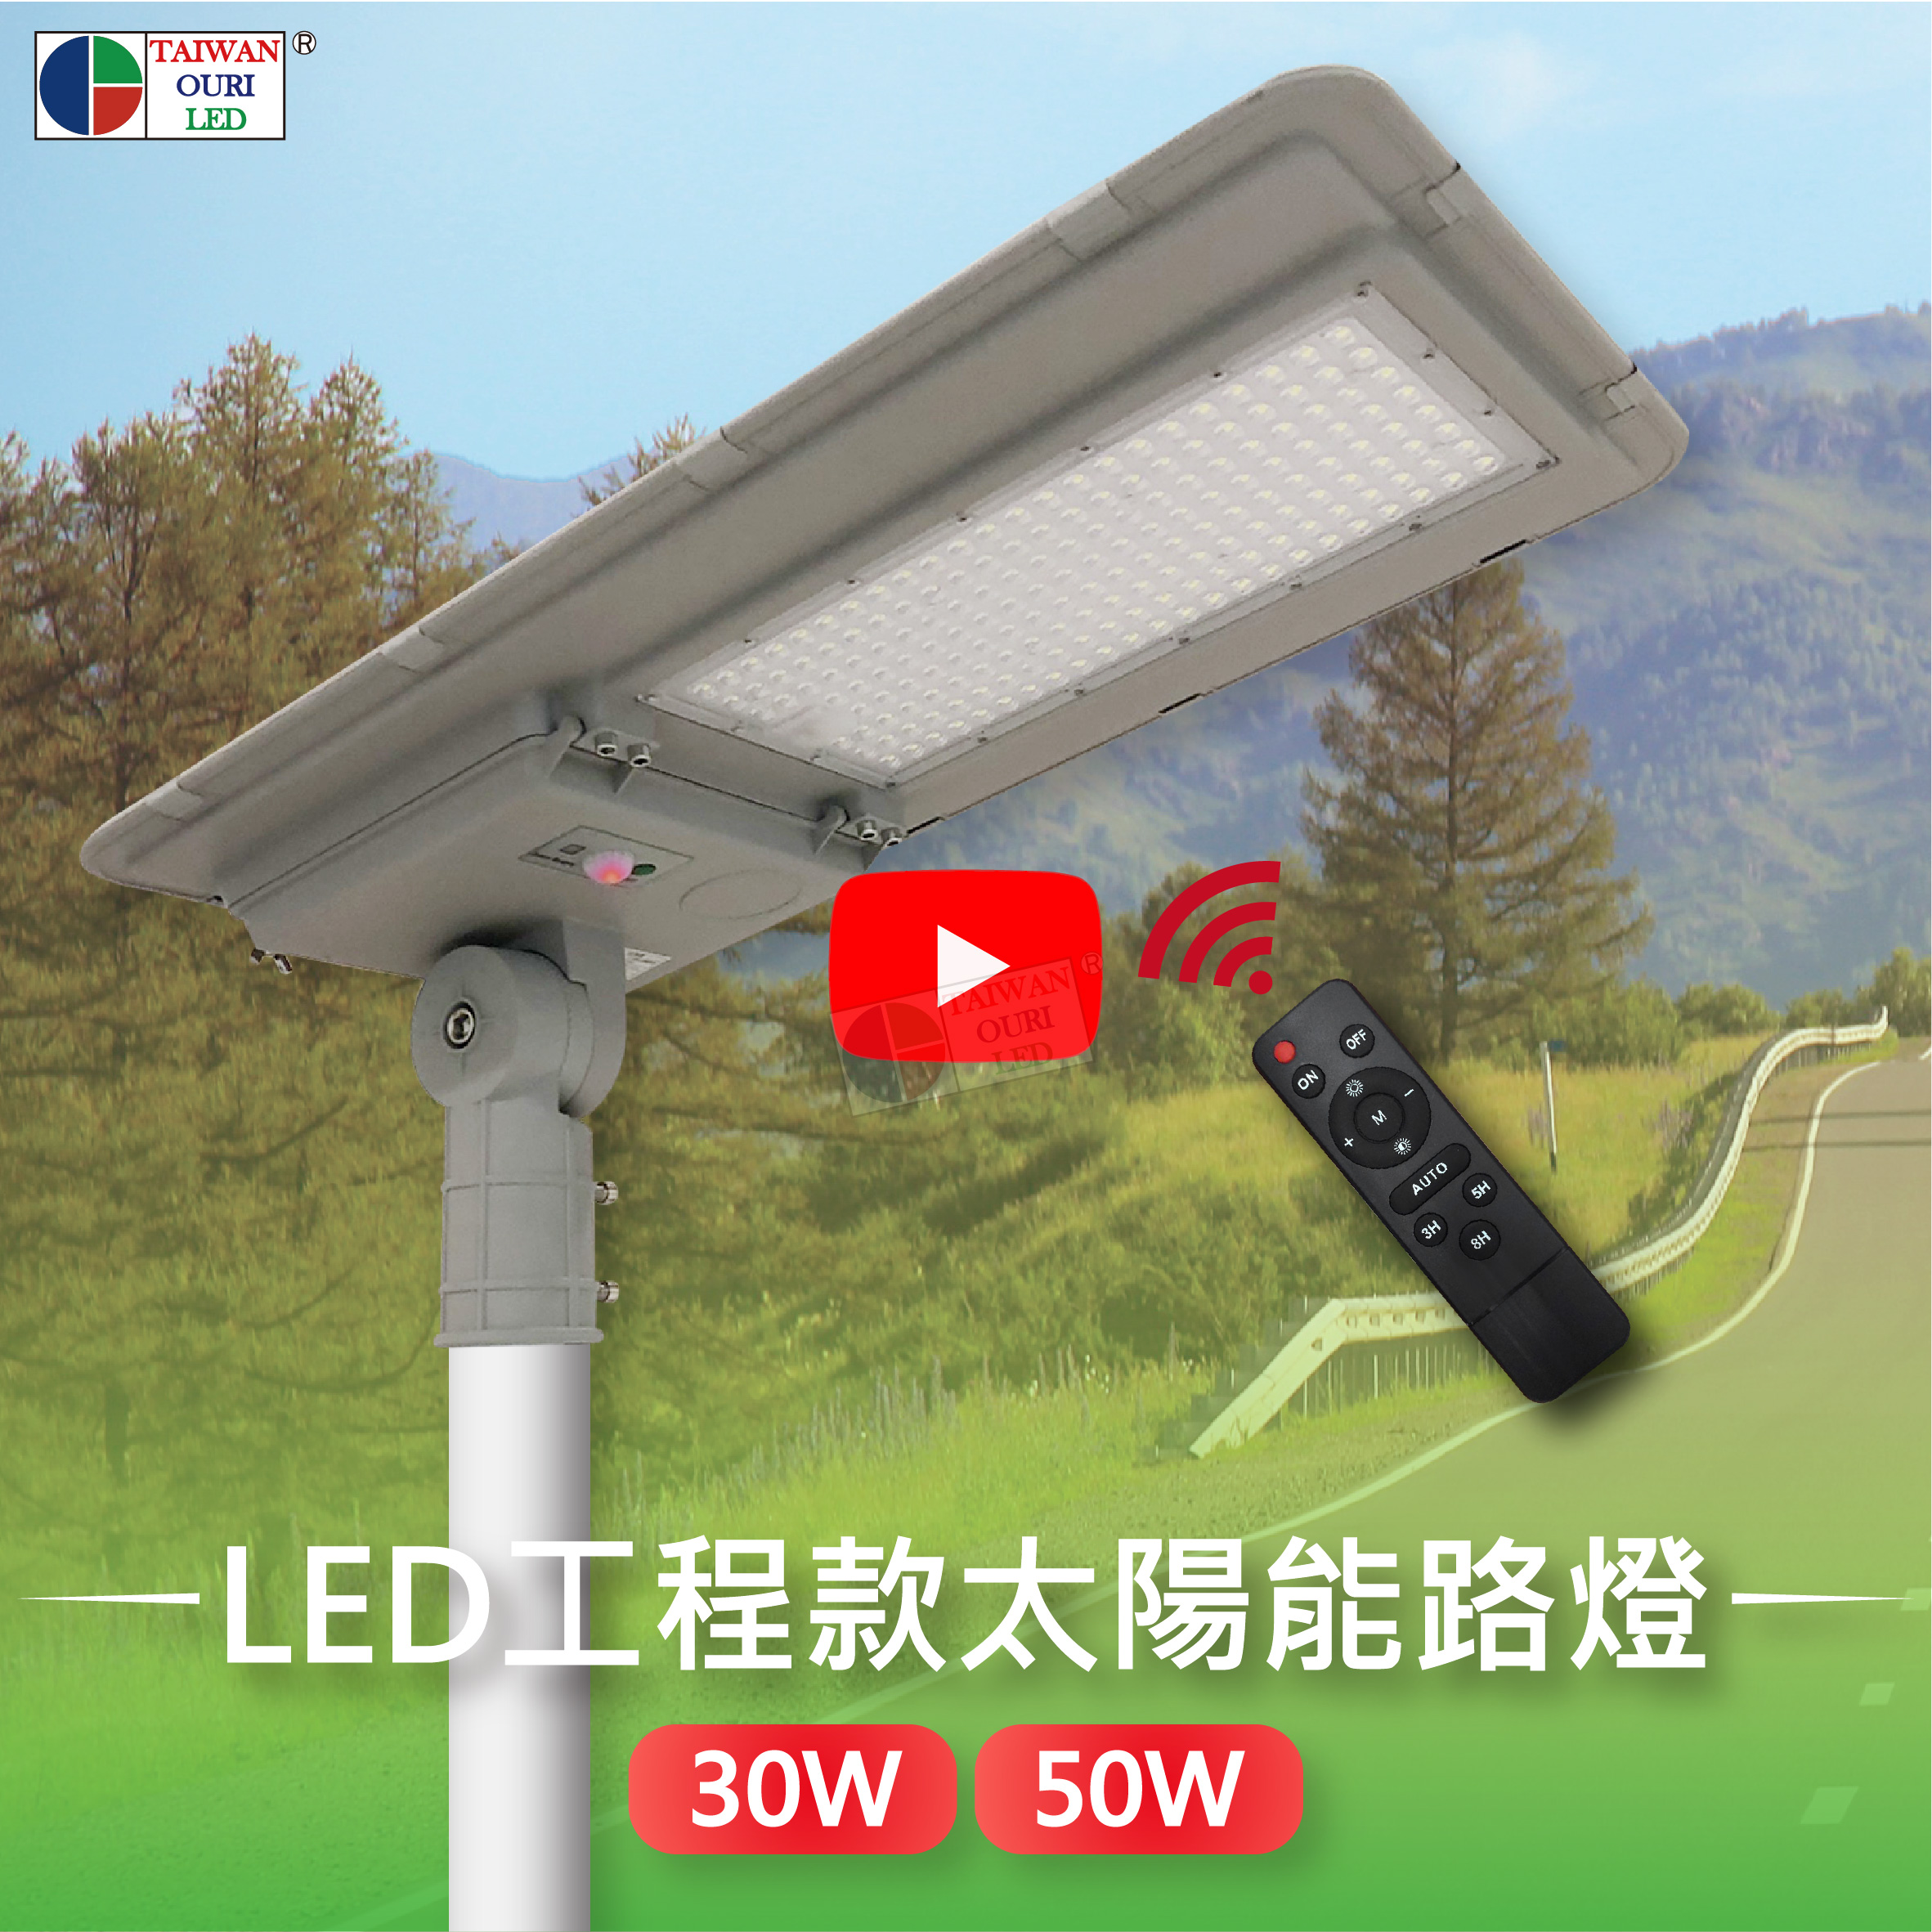 LED工程款太陽能路燈